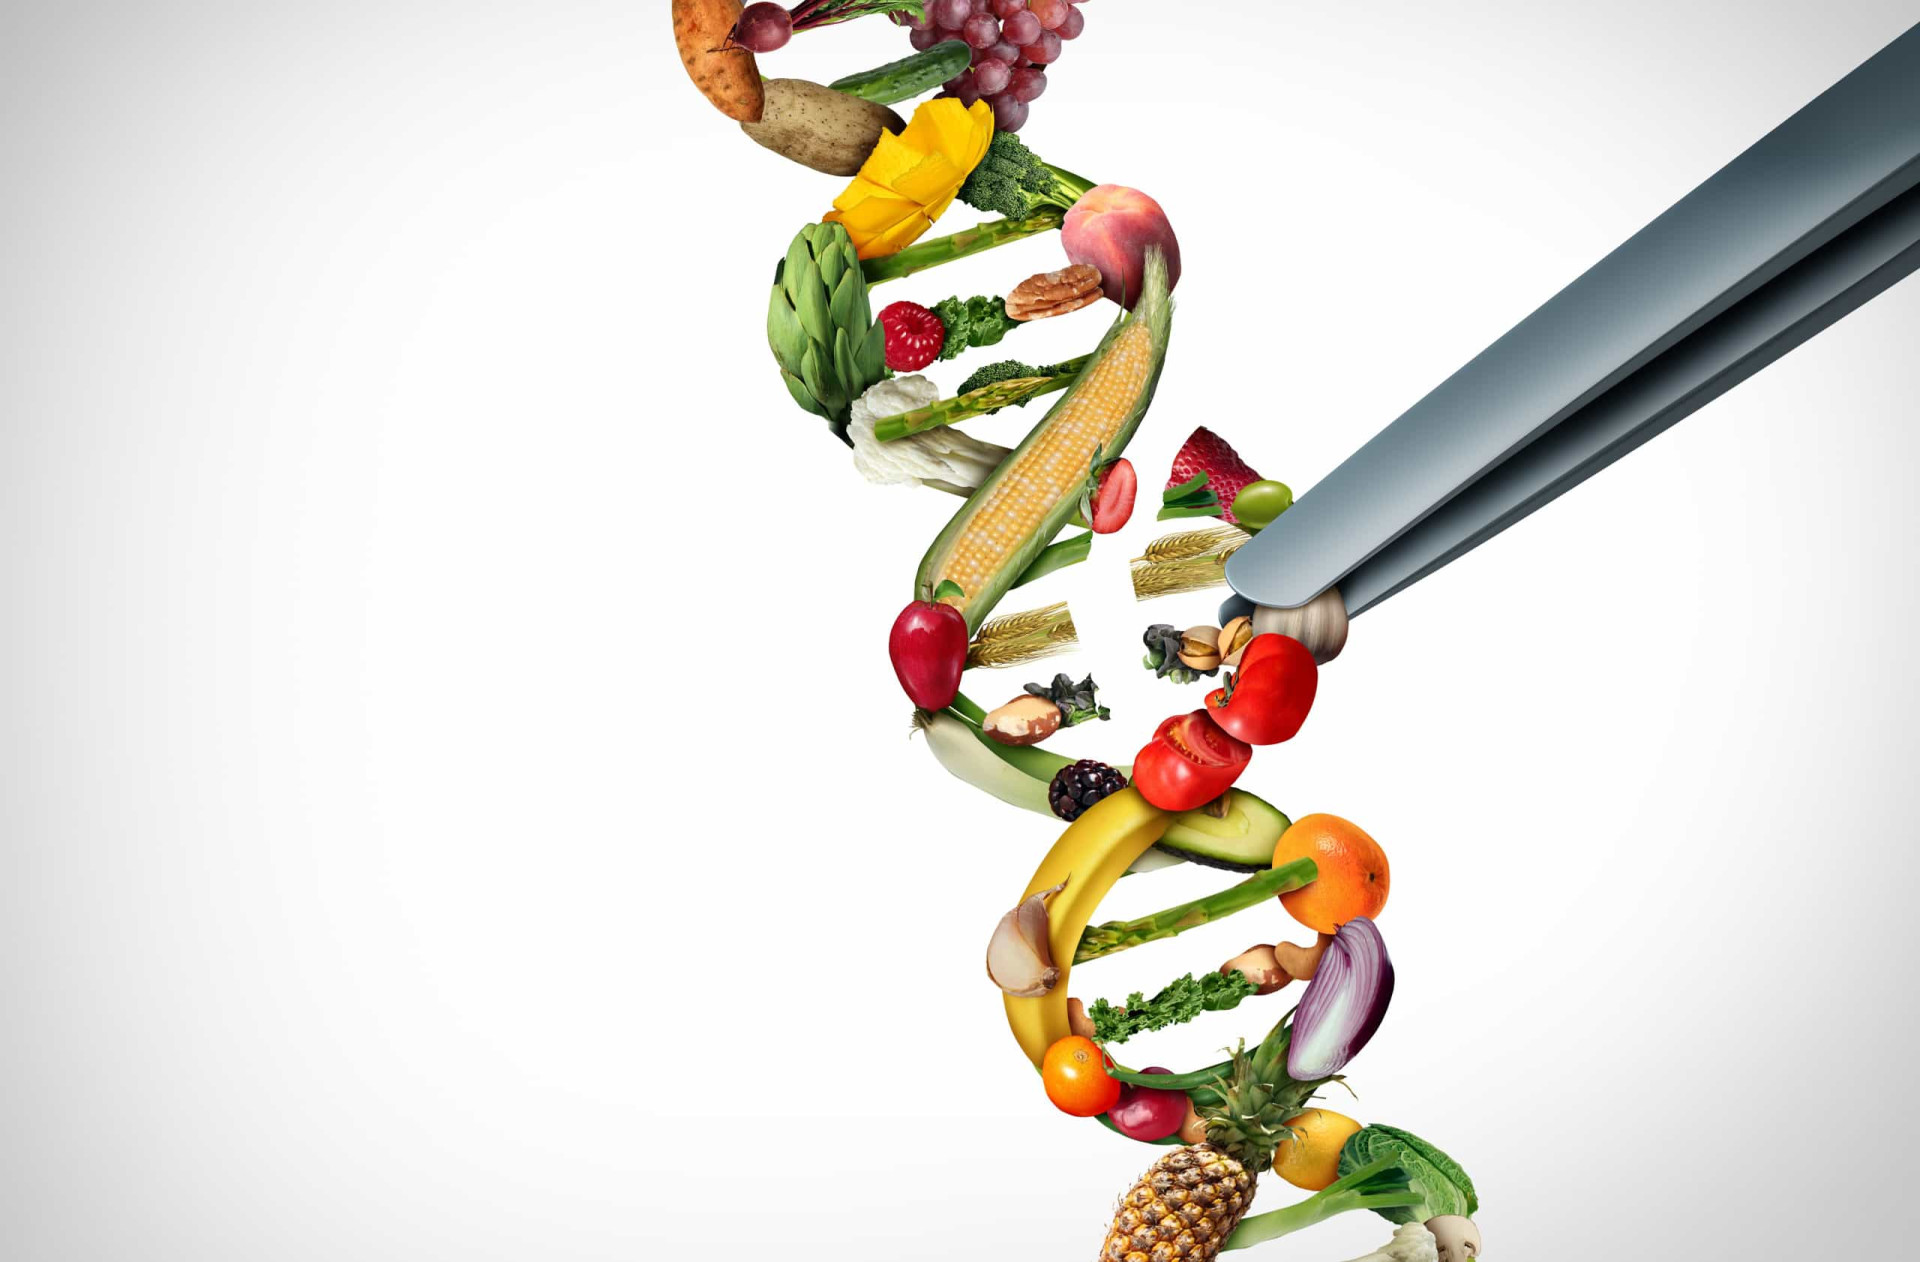 The health benefits of non-GMO